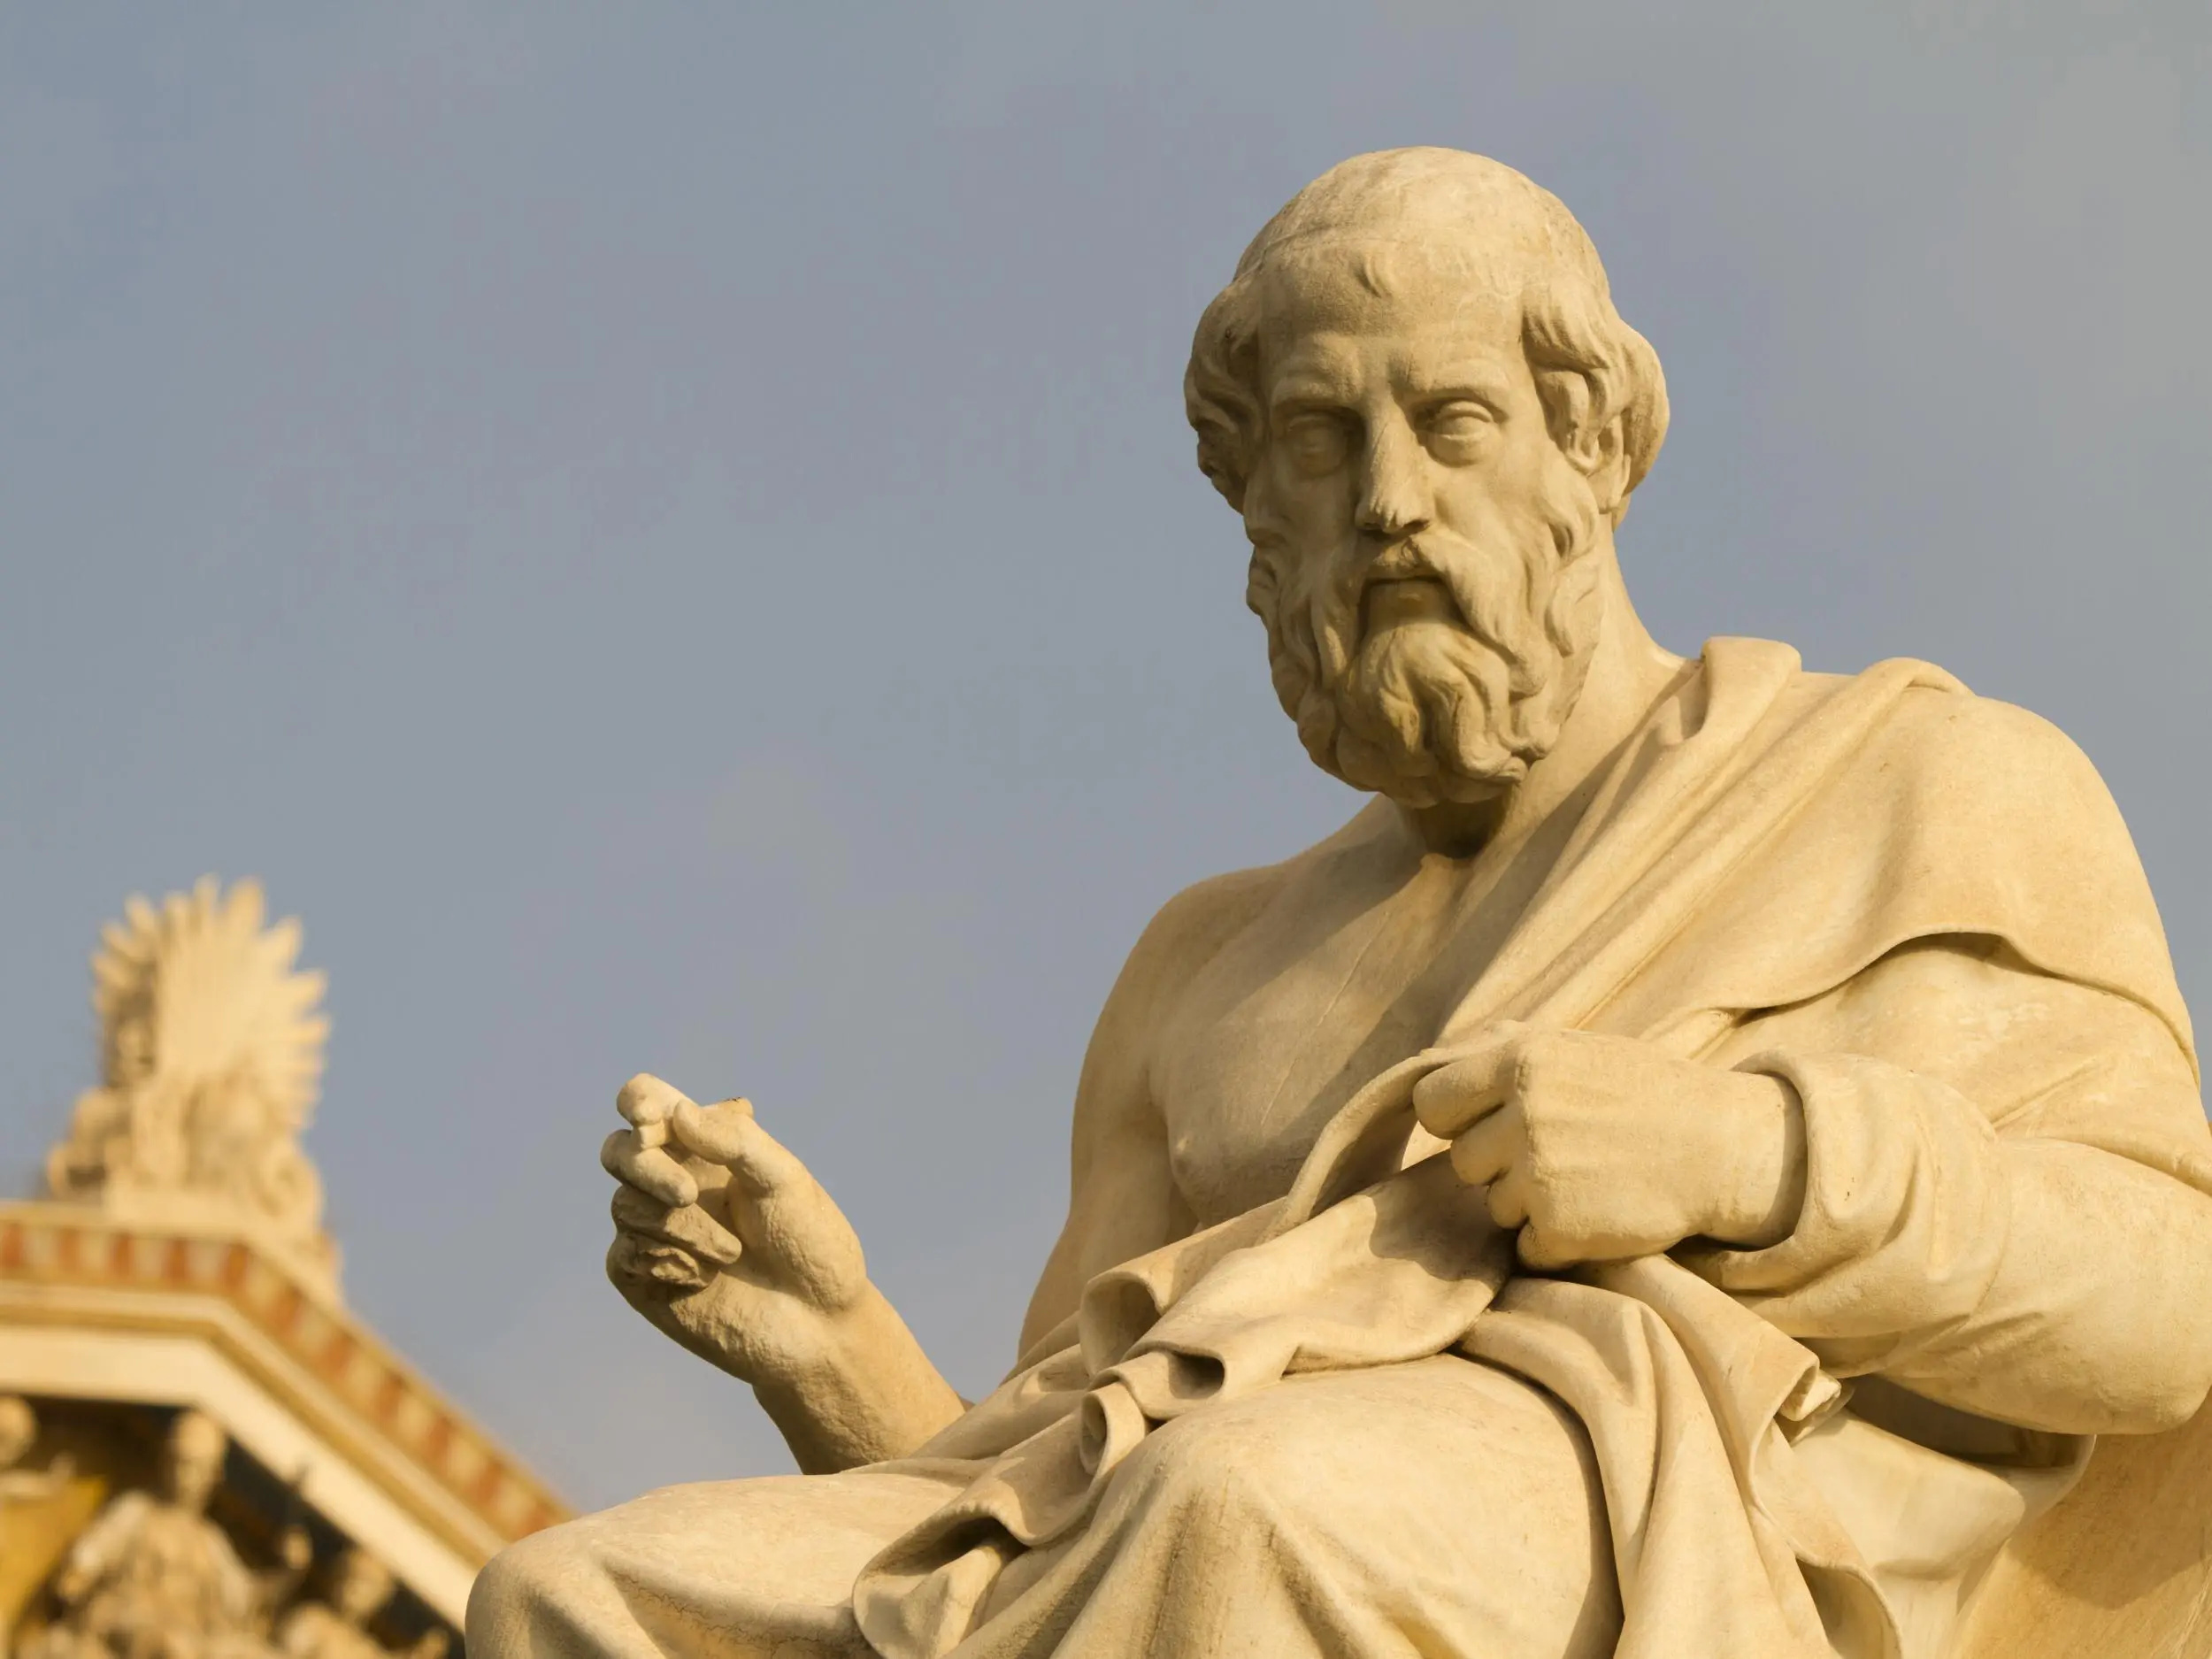 Plato's Republic, Part 1, Justice, Educational Renaissance, 2500x1880 HD Desktop